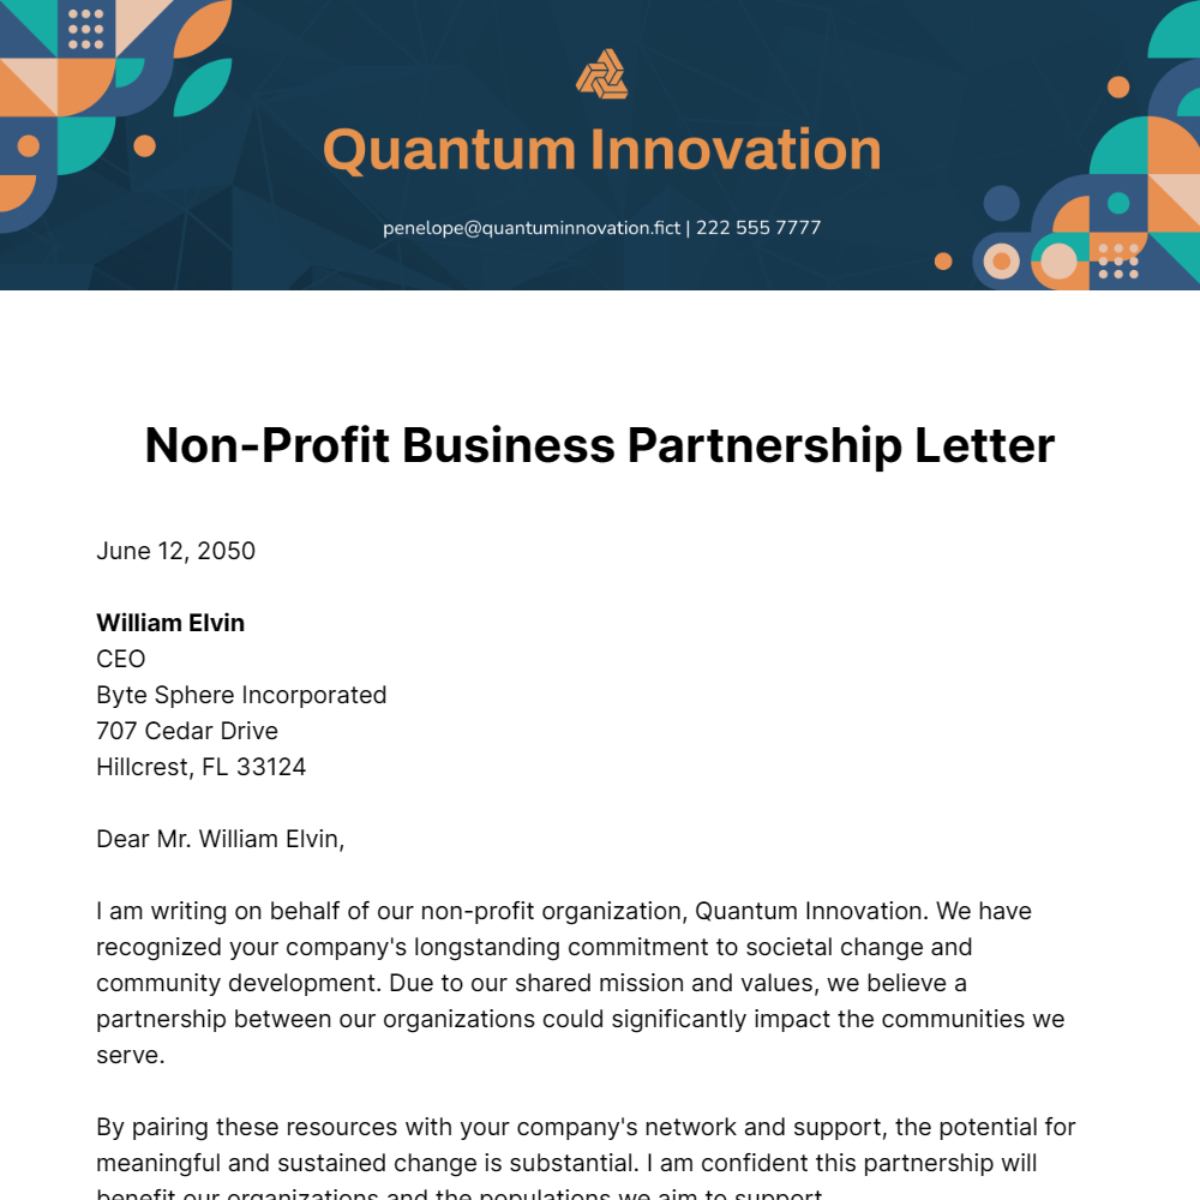 Non-Profit Business Partnership Letter Template